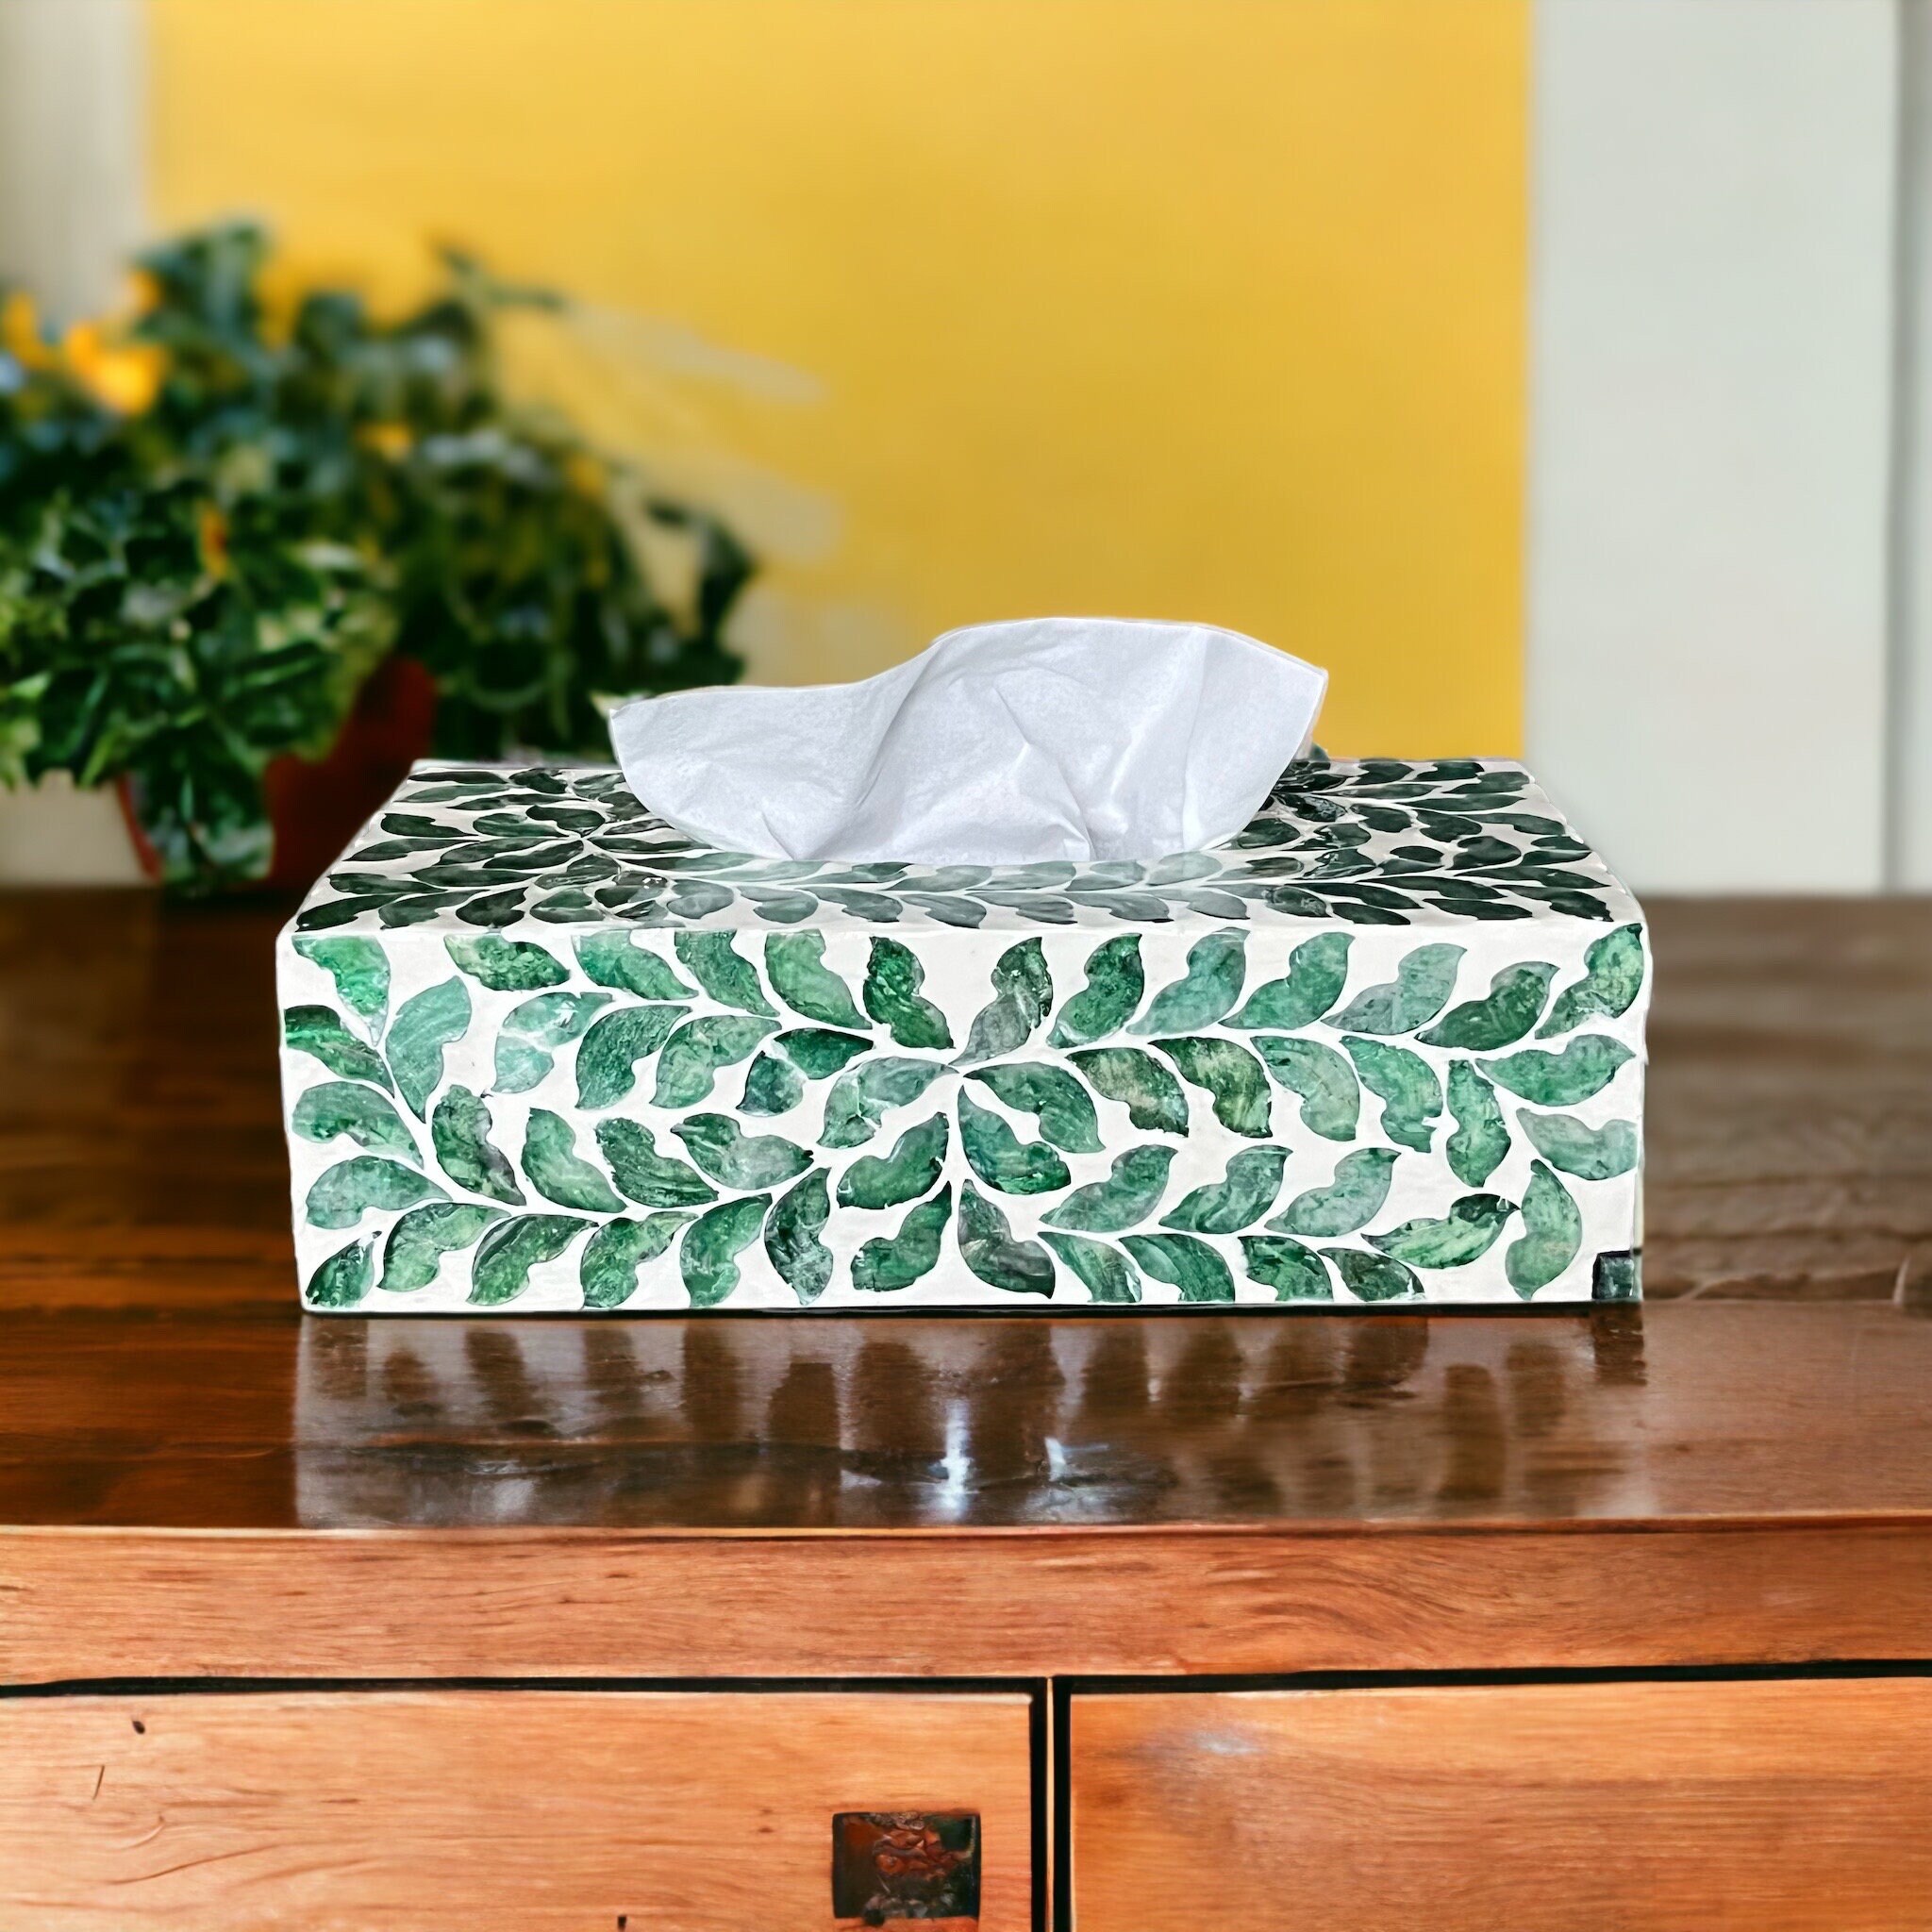 Perlmutt-Tissue-Box grüne Blätter, Rechteck-Tissue-Box-Halter